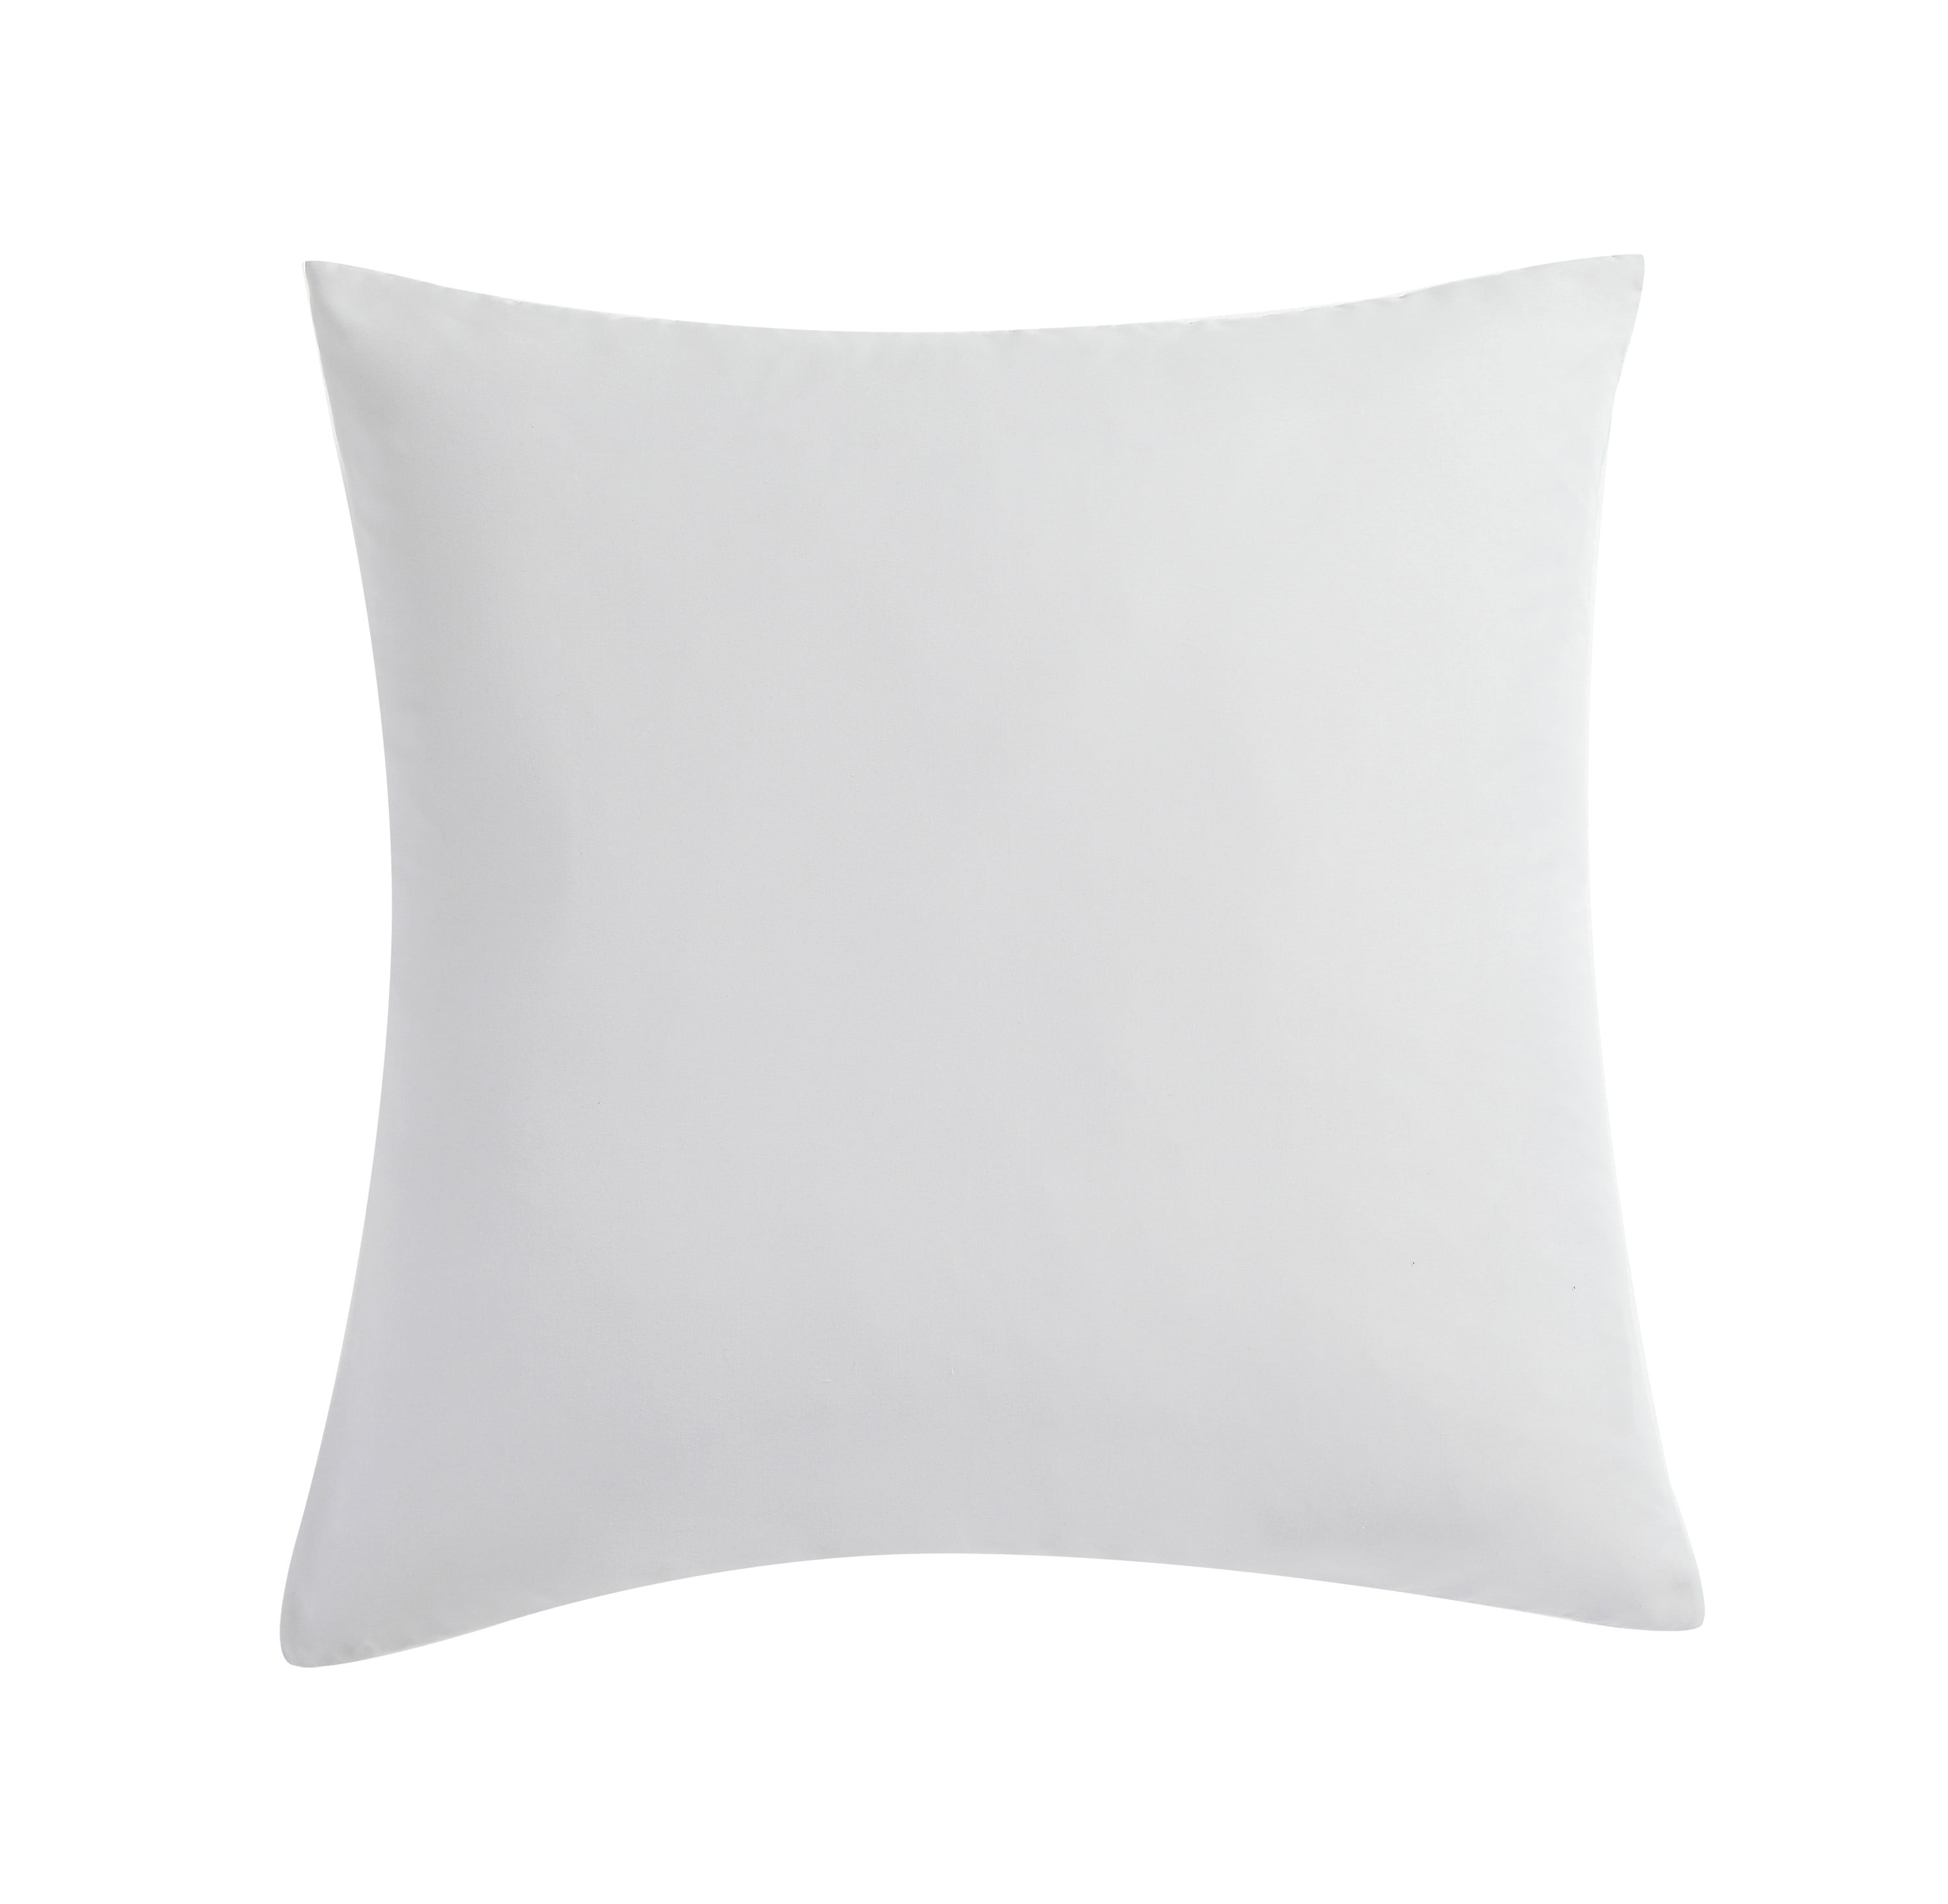 VCNY Home Elegant White Euro Pillow - Walmart.com - Walmart.com